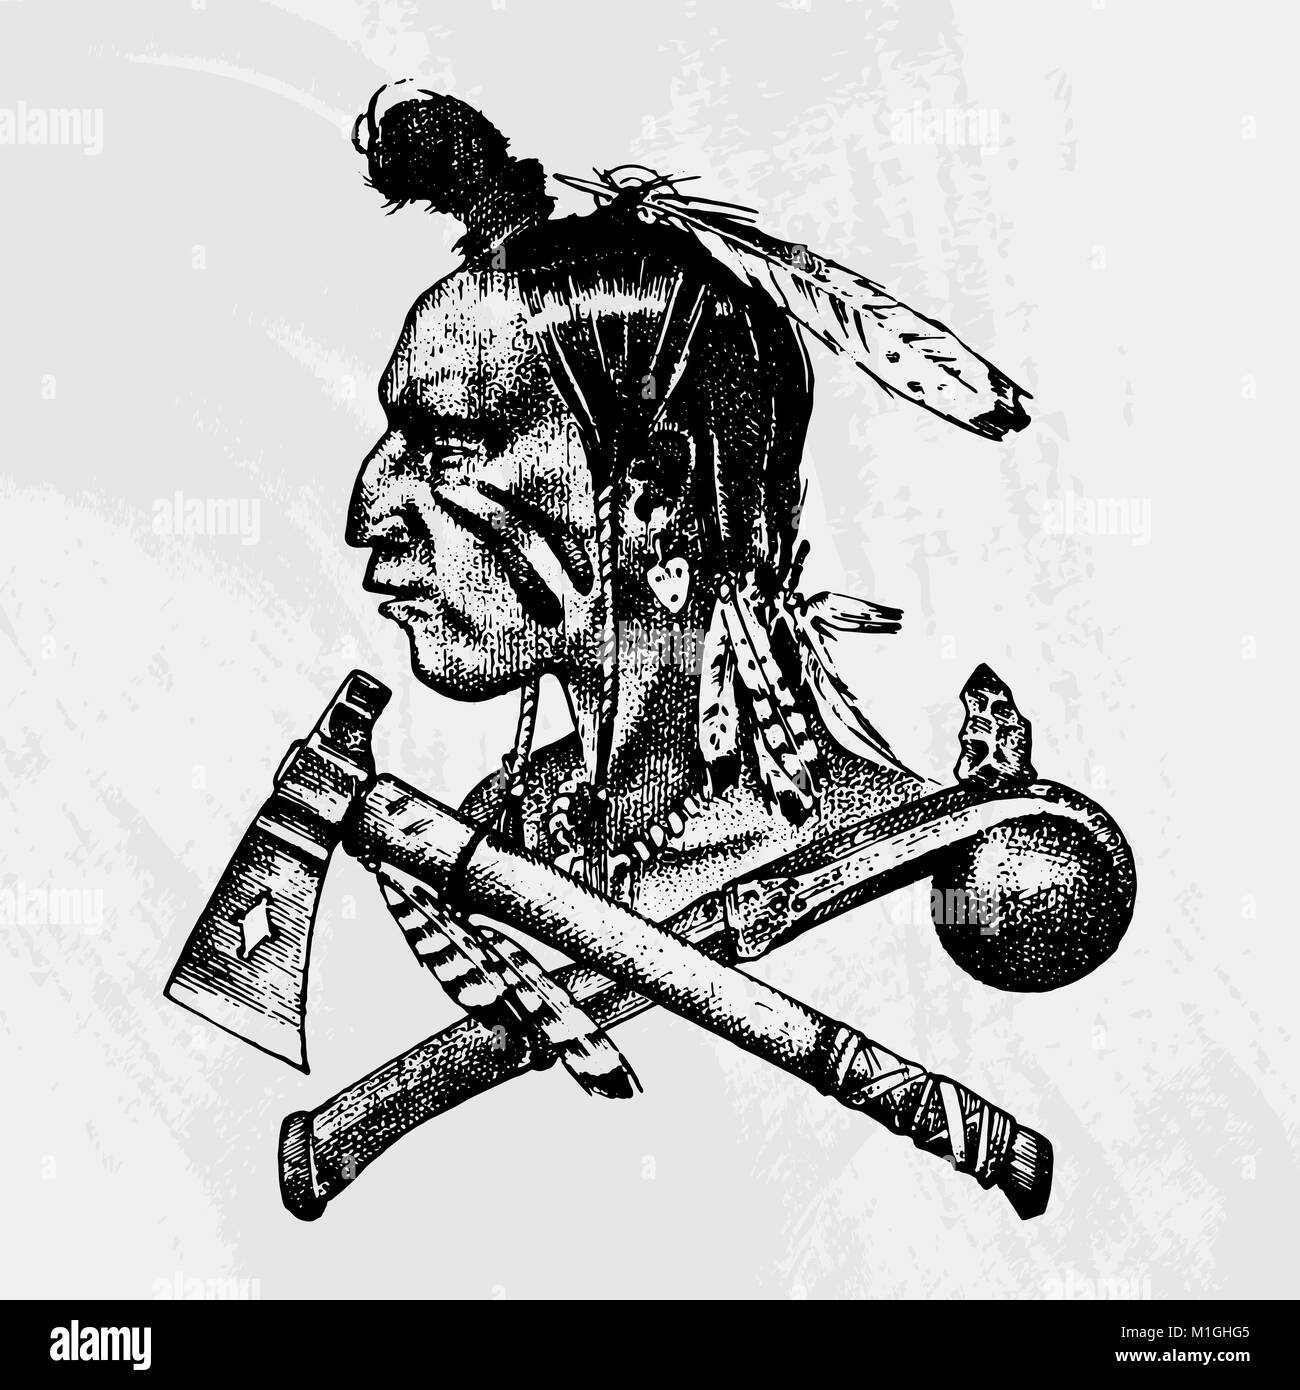 Nationale Amerikanische und indianische Traditionen. Messer und Axt, Werkzeugen und Instrumenten. graviert Hand in alte Skizze gezeichnet. Ein Mann mit Federn auf dem Kopf. Emblem oder Logo. Stock Vektor